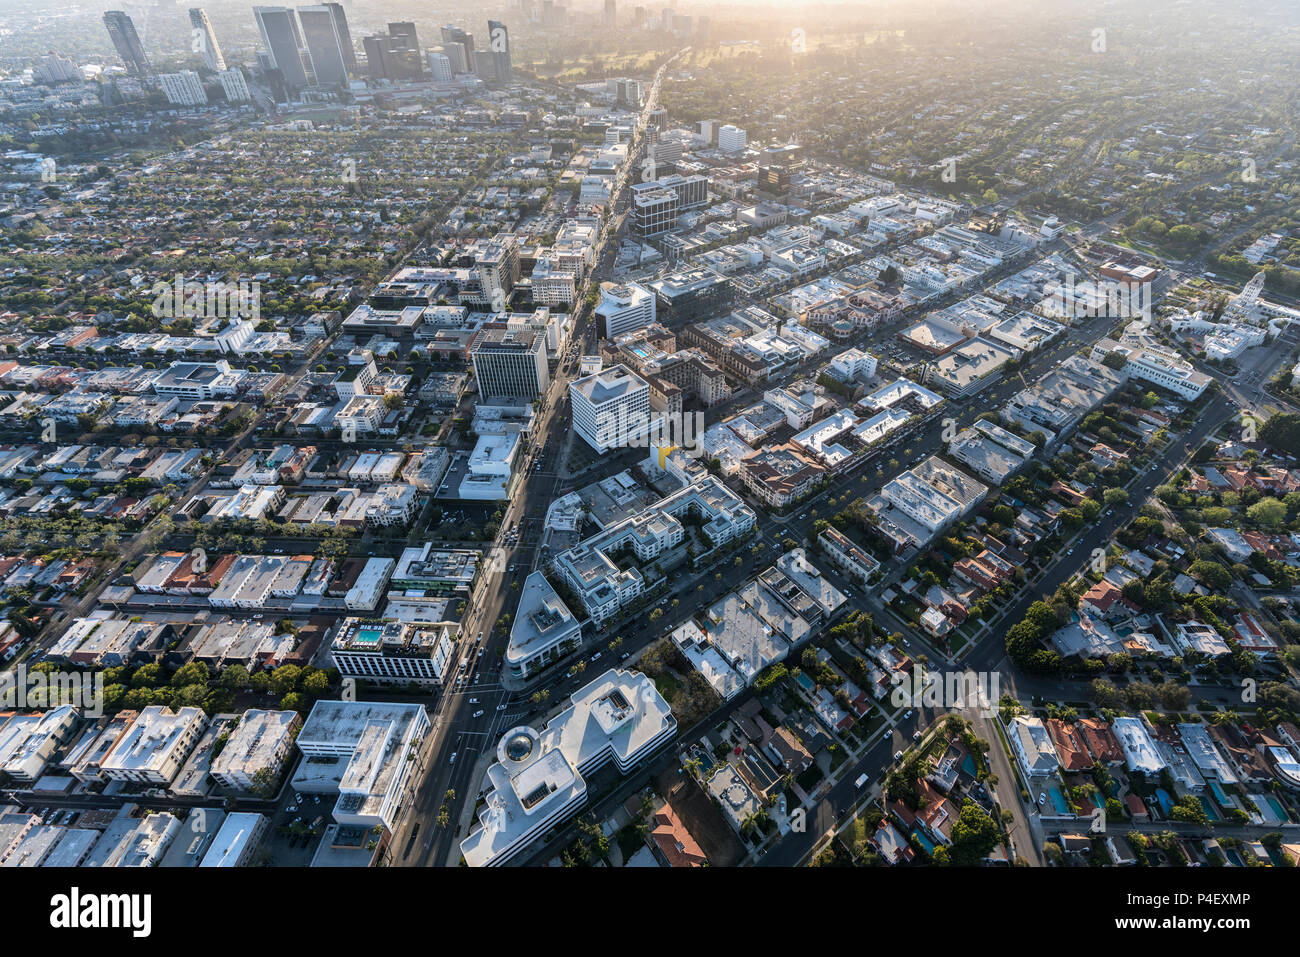 Beverly Hills, California, EE.UU. - 18 de abril de 2018: Vista aérea de la famosa Beverly Hills, distrito de negocios con Century City en segundo plano. Foto de stock